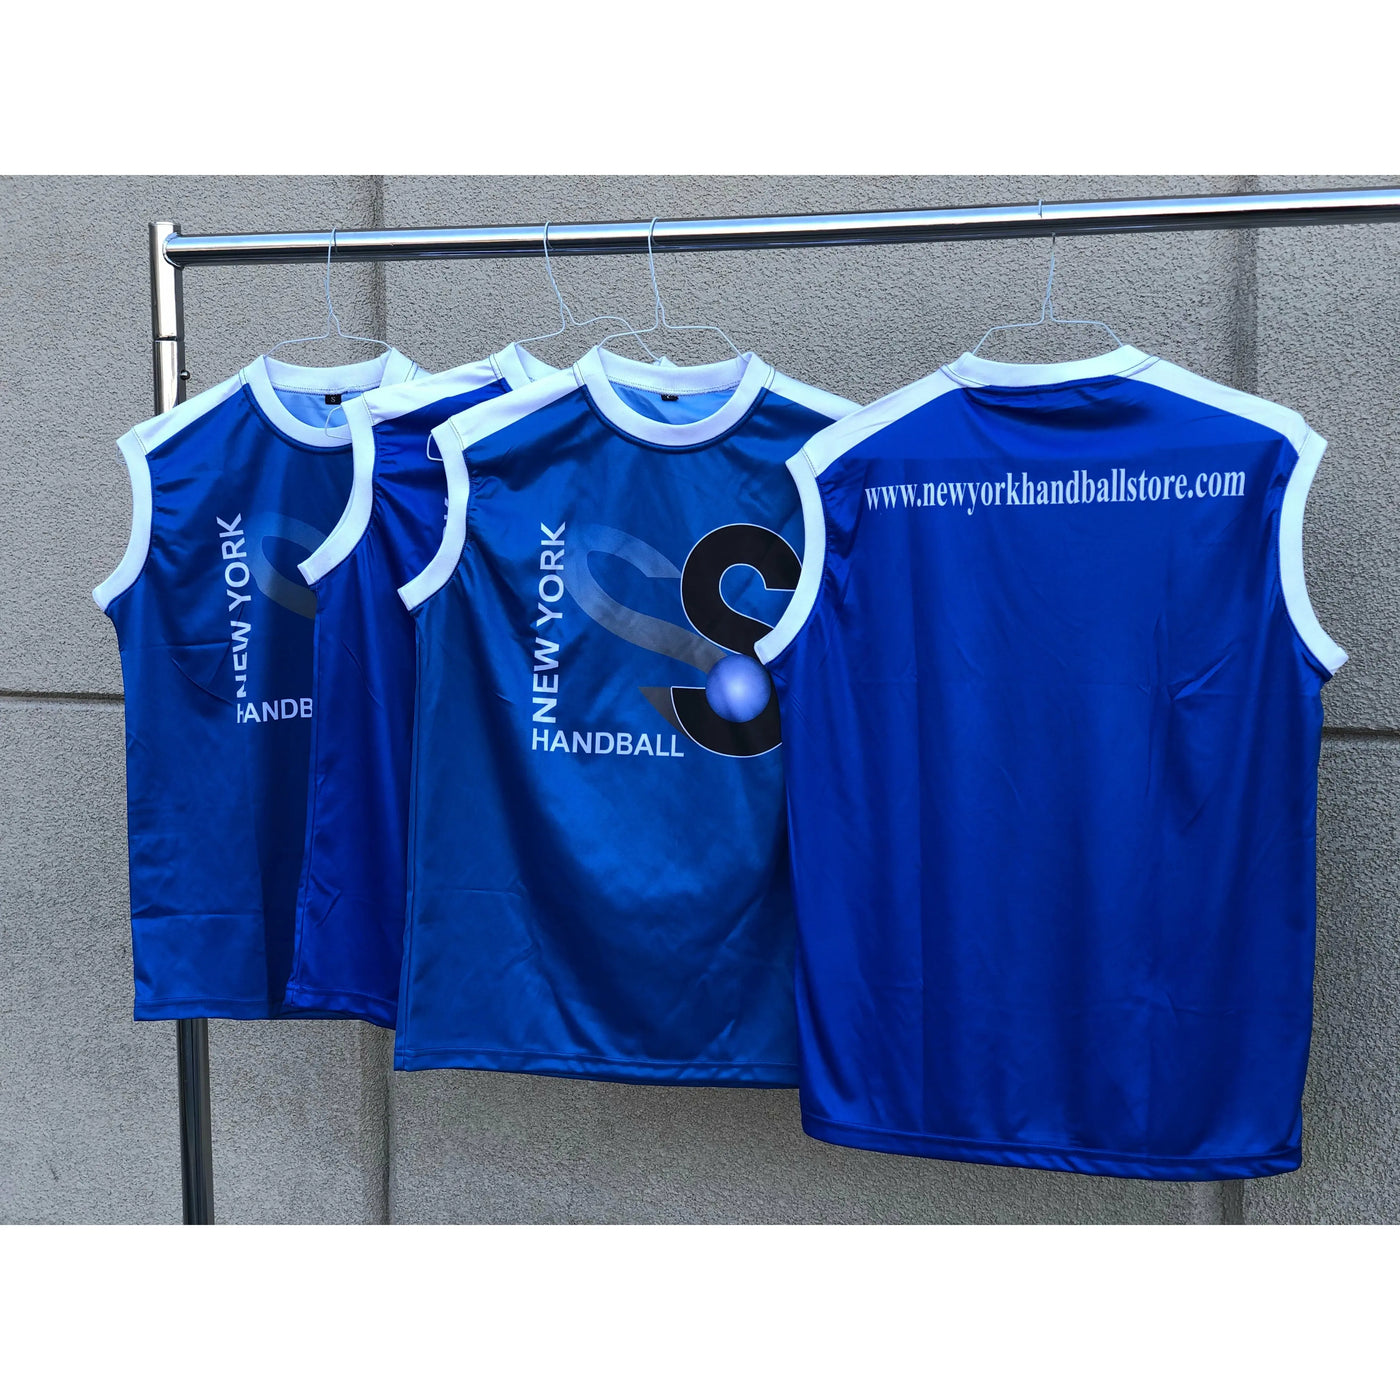 New York Handball sleeveless shirt - New York Handball Store Corp